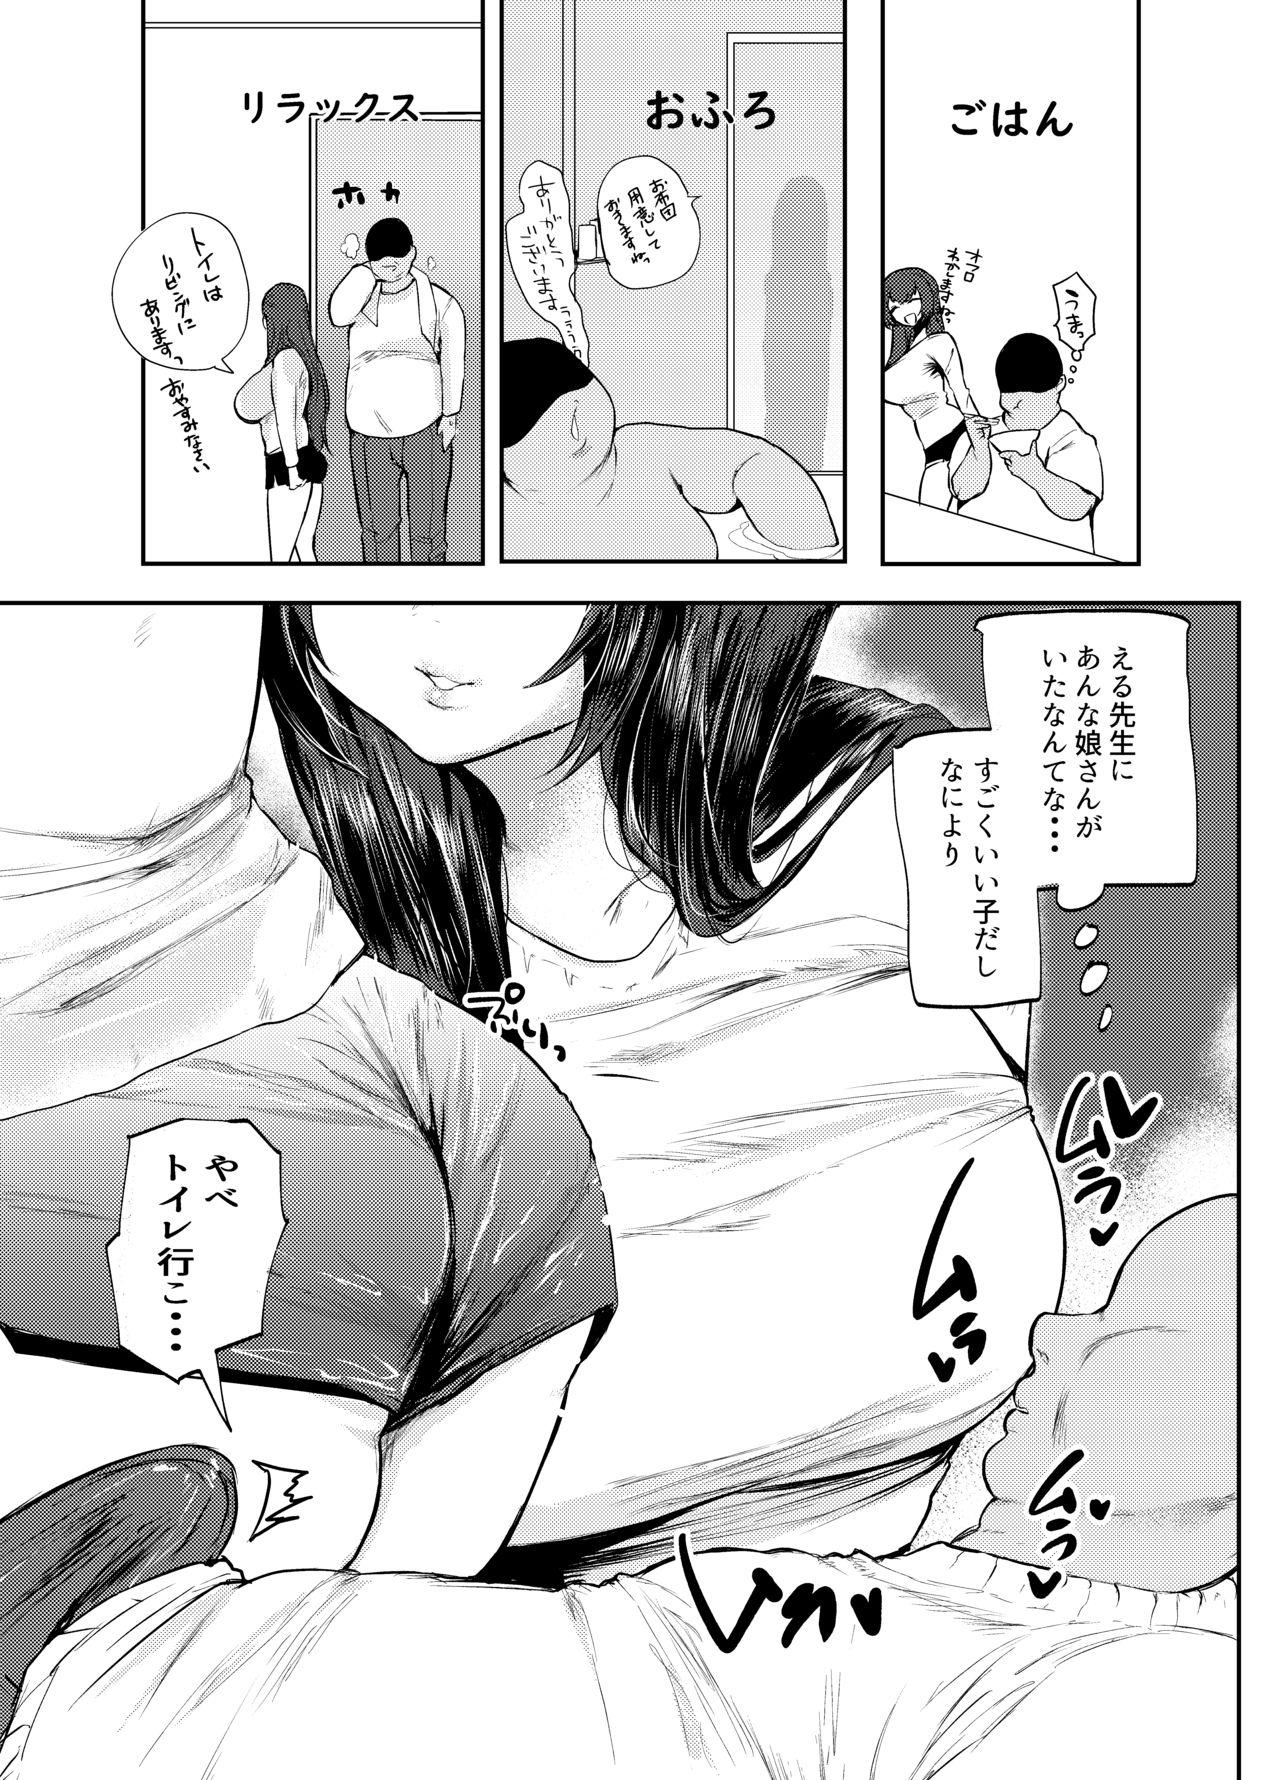 She Papa wa Musume ga Daisuki - Original Work - Page 10